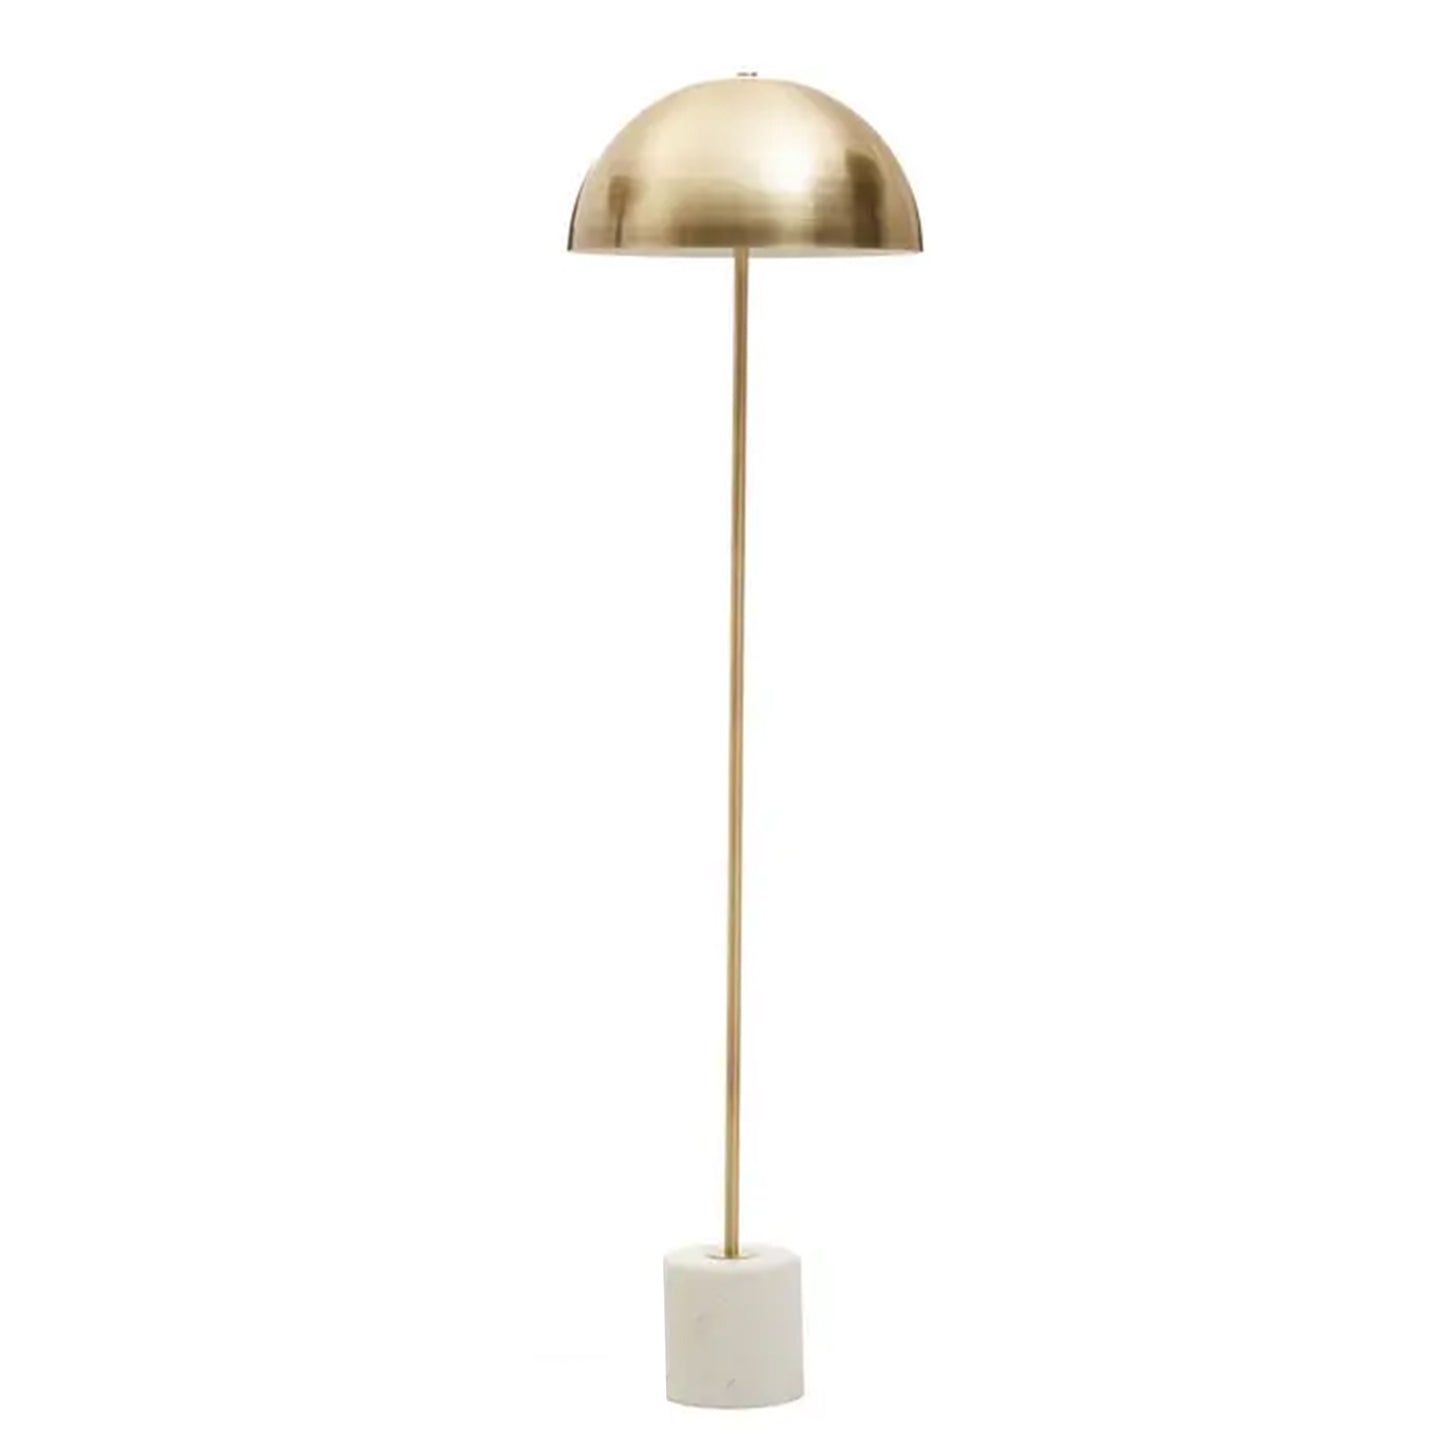 Marble Based Brass Mushroom Floor Lamp